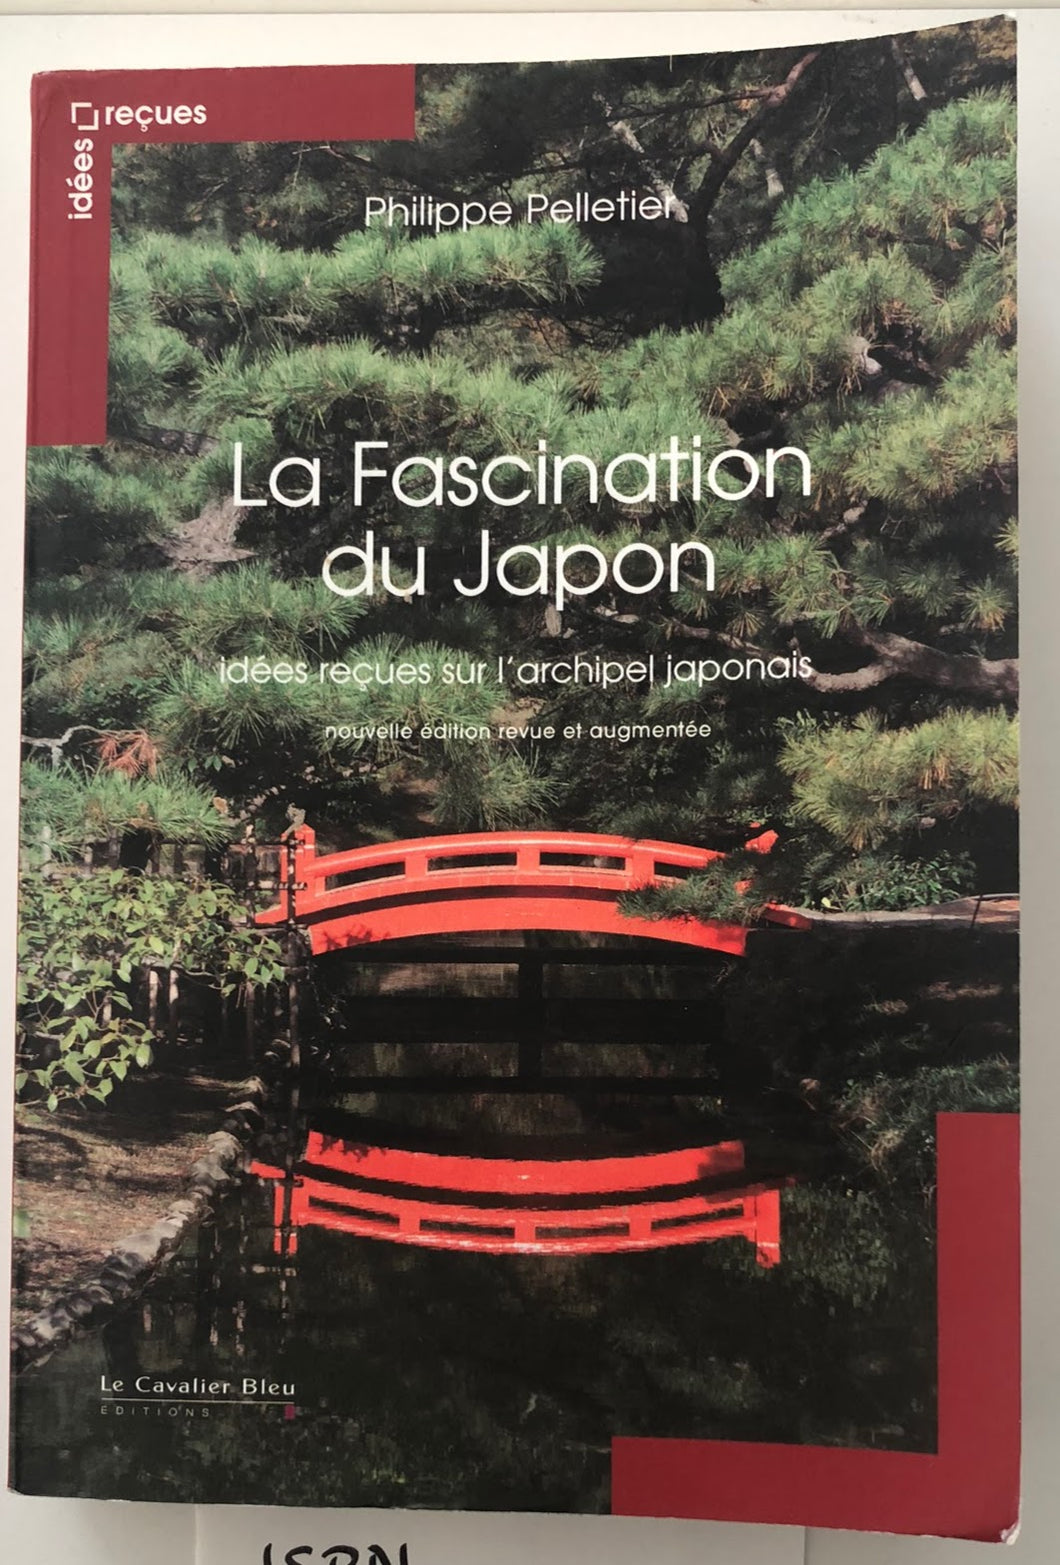 La Fascination du Japon : Philippe Pelletier